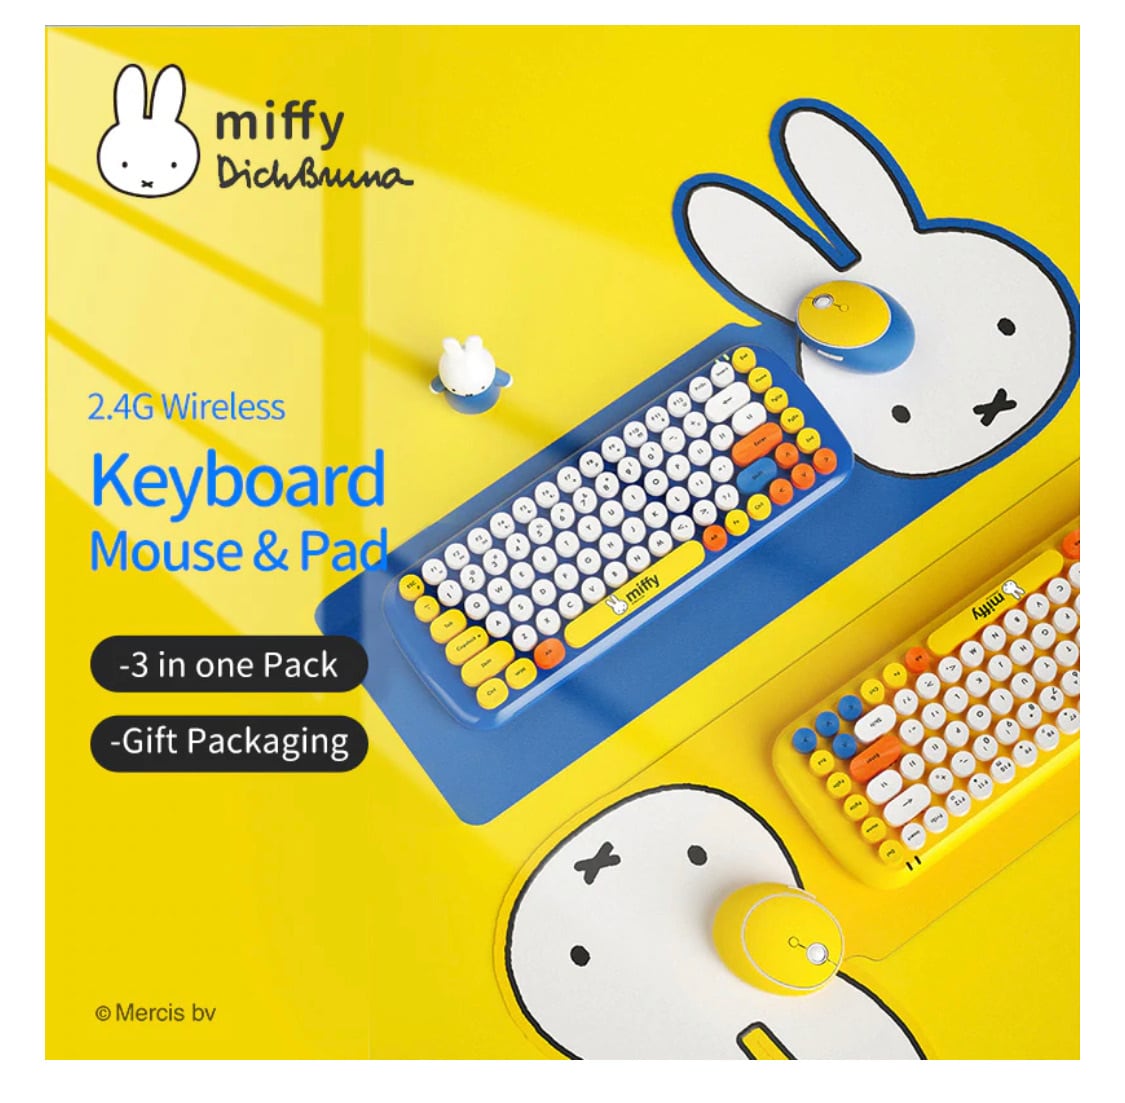 Miffy×mipow ミッフィー キーボード&マウス&マウスパッド | hn. 海外雑貨